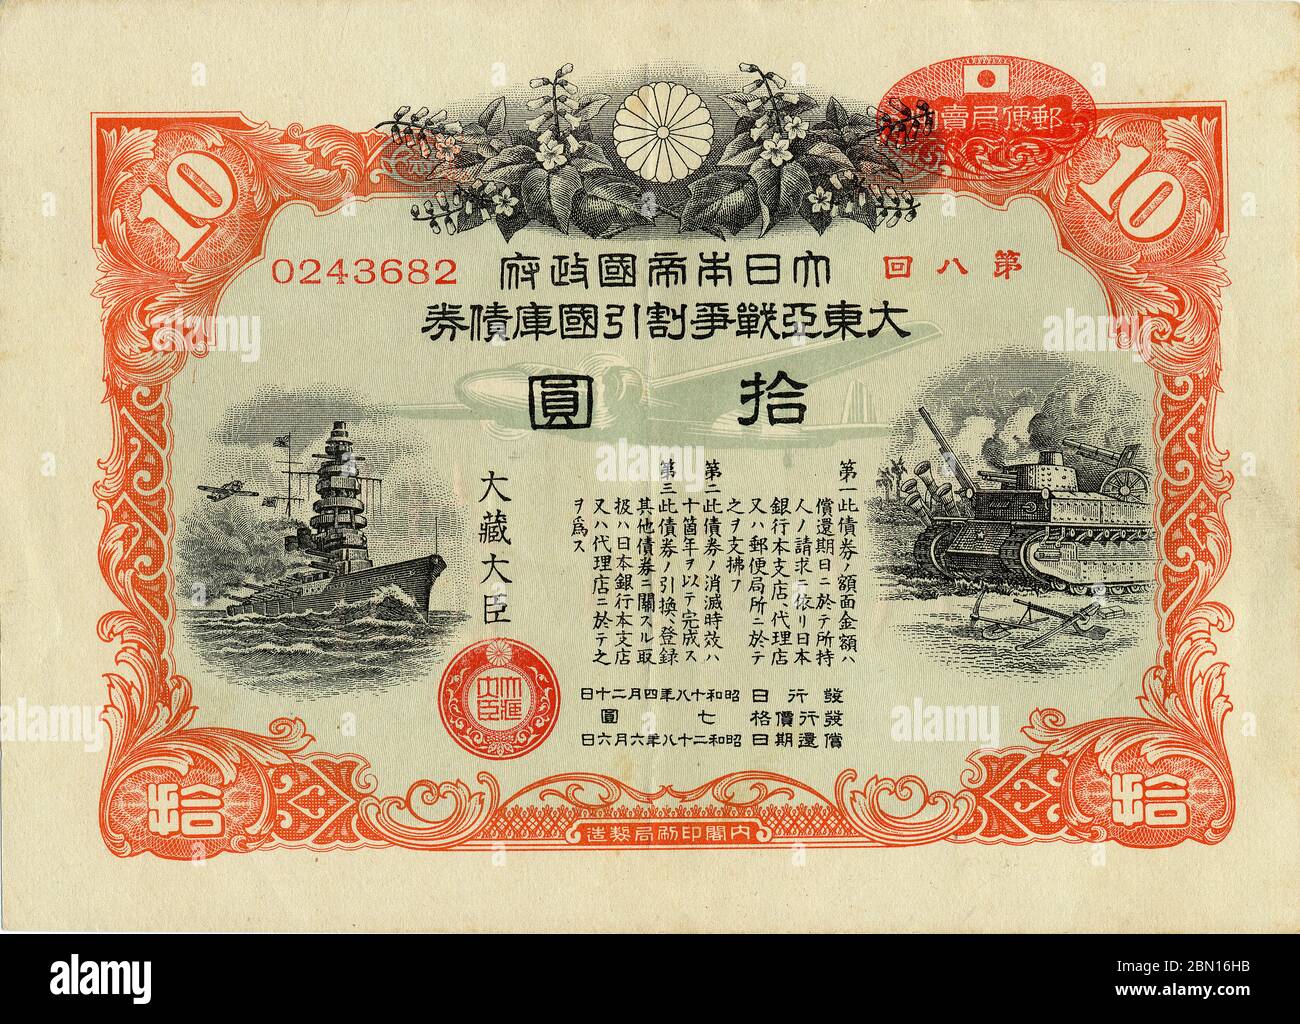 [ 1943 Giappone - Japanese Pacific War Bond ] - Pacific War Bond di 10 yen emesso dal governo imperiale del Giappone nel 1943 (Showa 18), con una nave navale, un carro armato e un aereo da guerra della seconda guerra mondiale giapponese. Negli anni '30 e '40, i risparmi "volontari" furono così fortemente incoraggiati a finanziare lo sforzo bellico giapponese che entro il 1944 (Showa 19) le famiglie giapponesi risparmiavano un incredibile 39.5% del reddito disponibile. legame vintage del xx secolo. Foto Stock